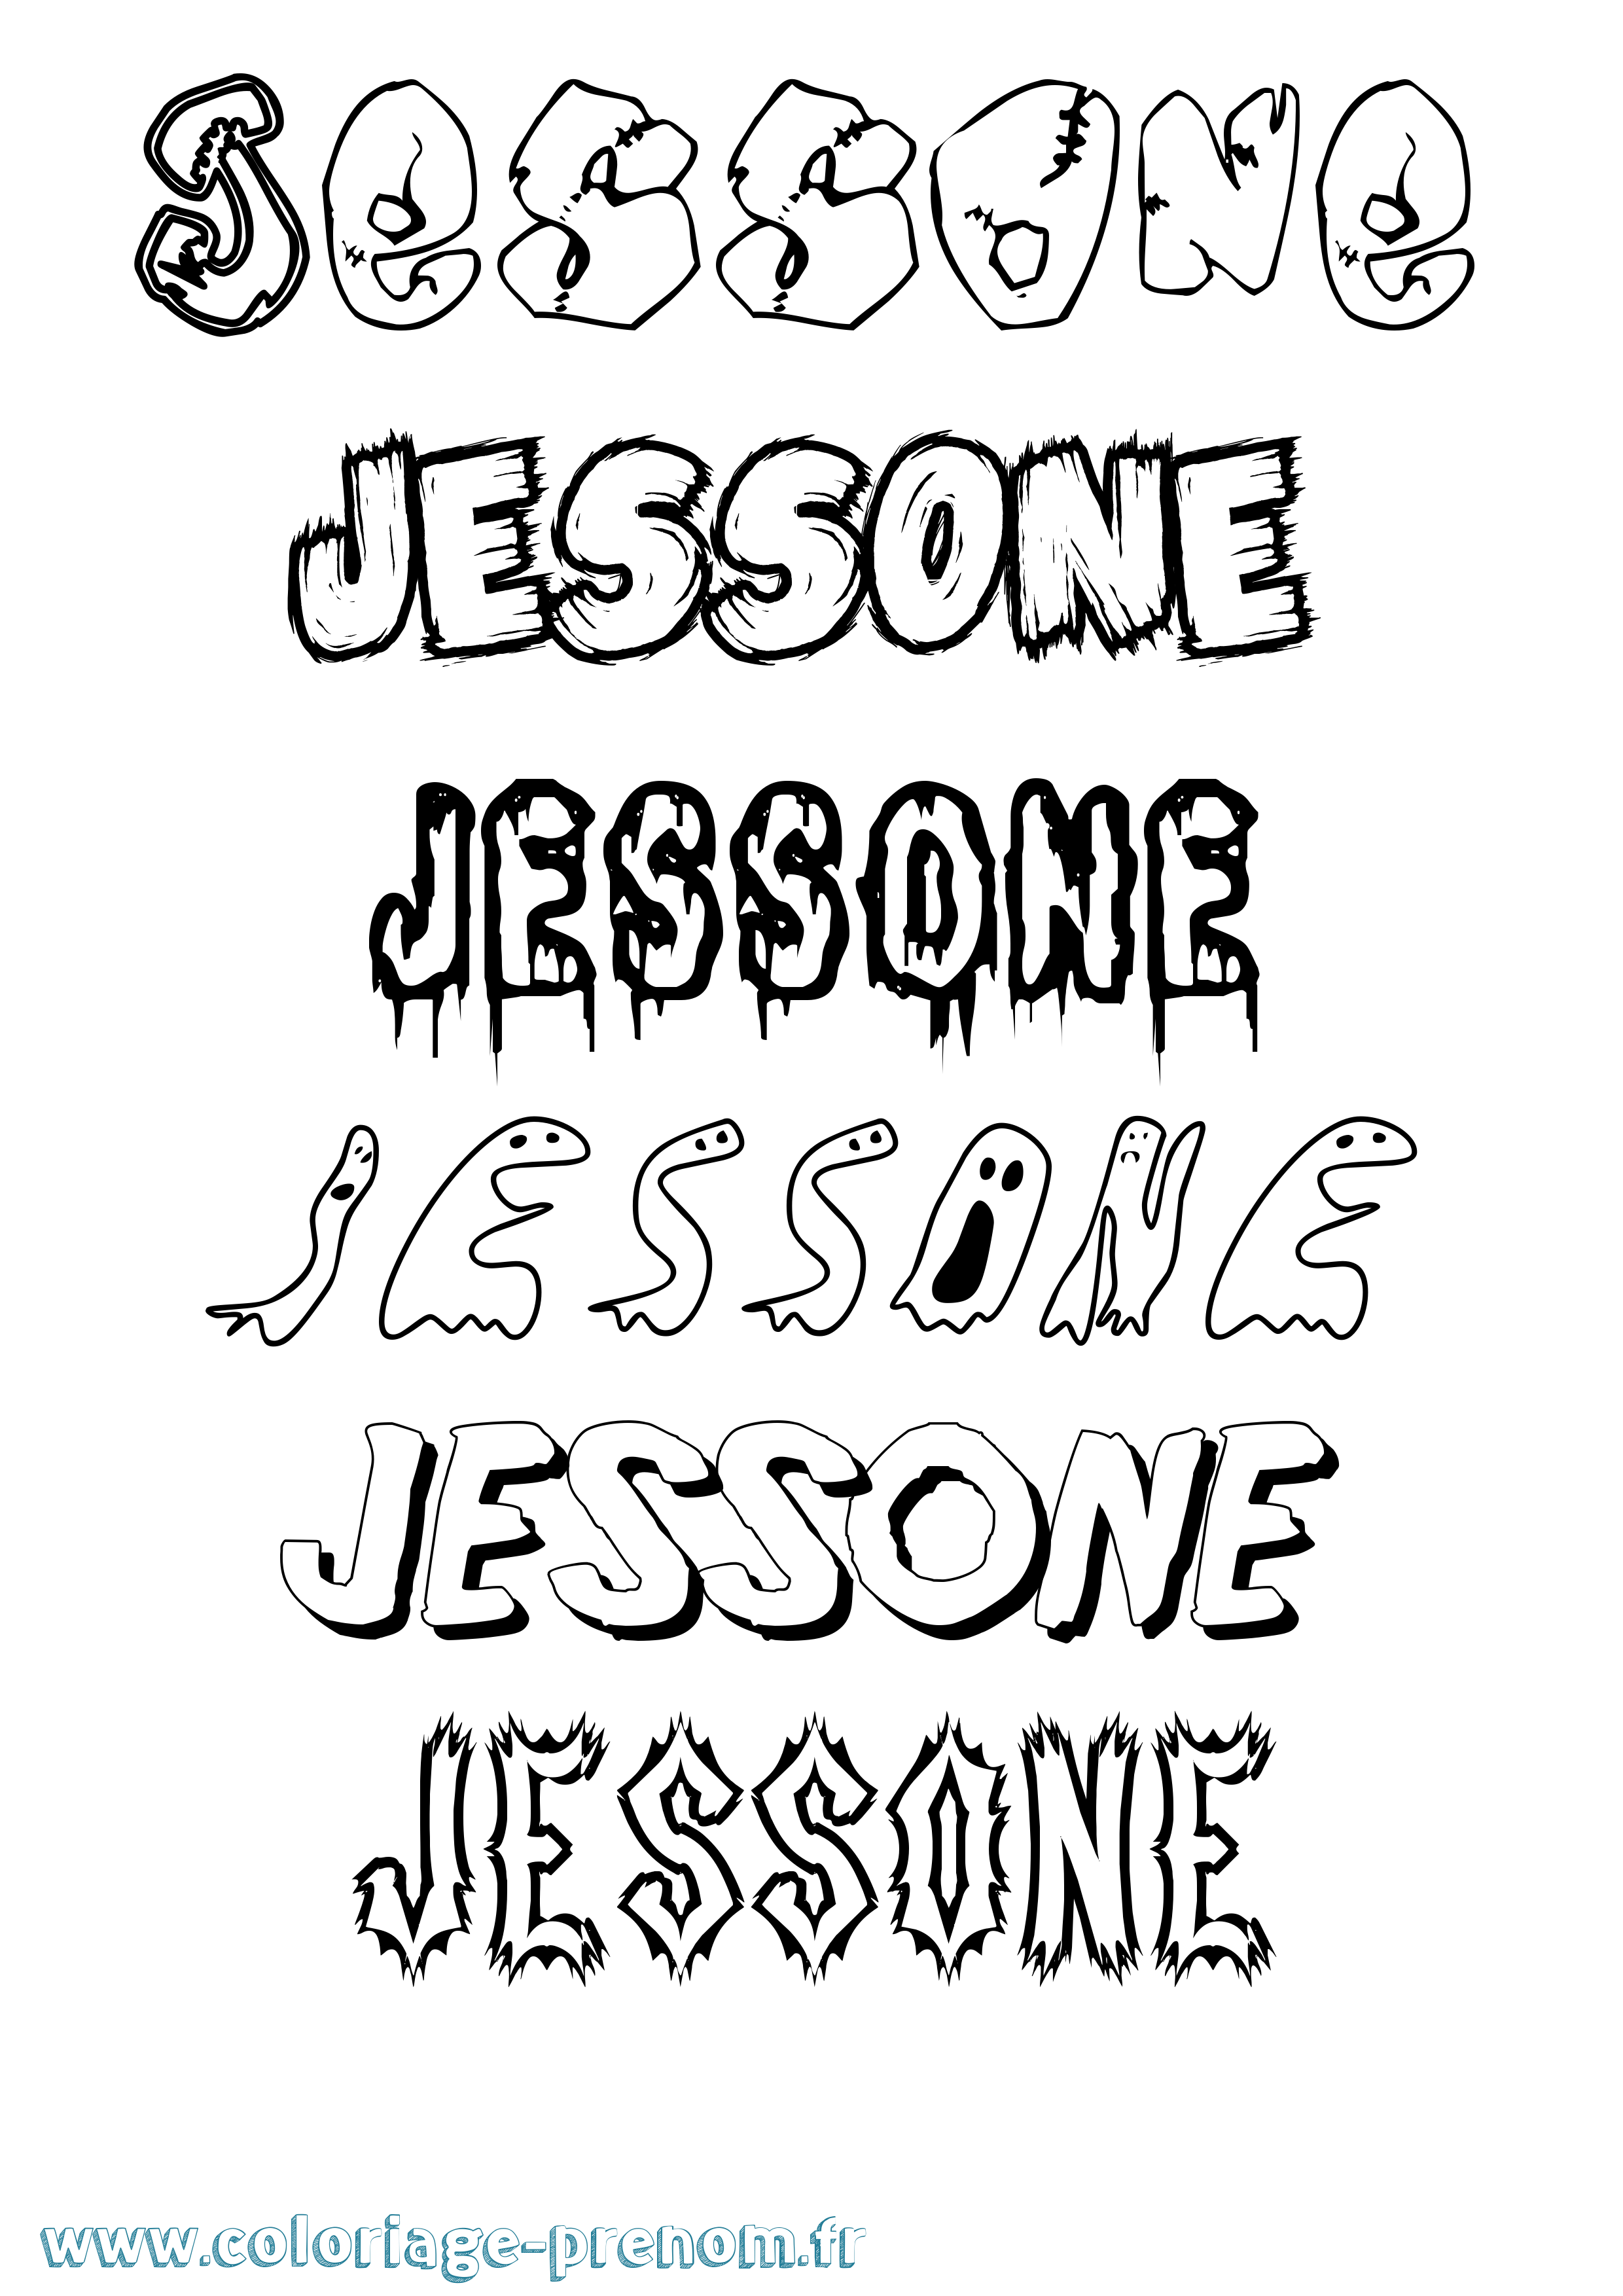 Coloriage prénom Jessone Frisson